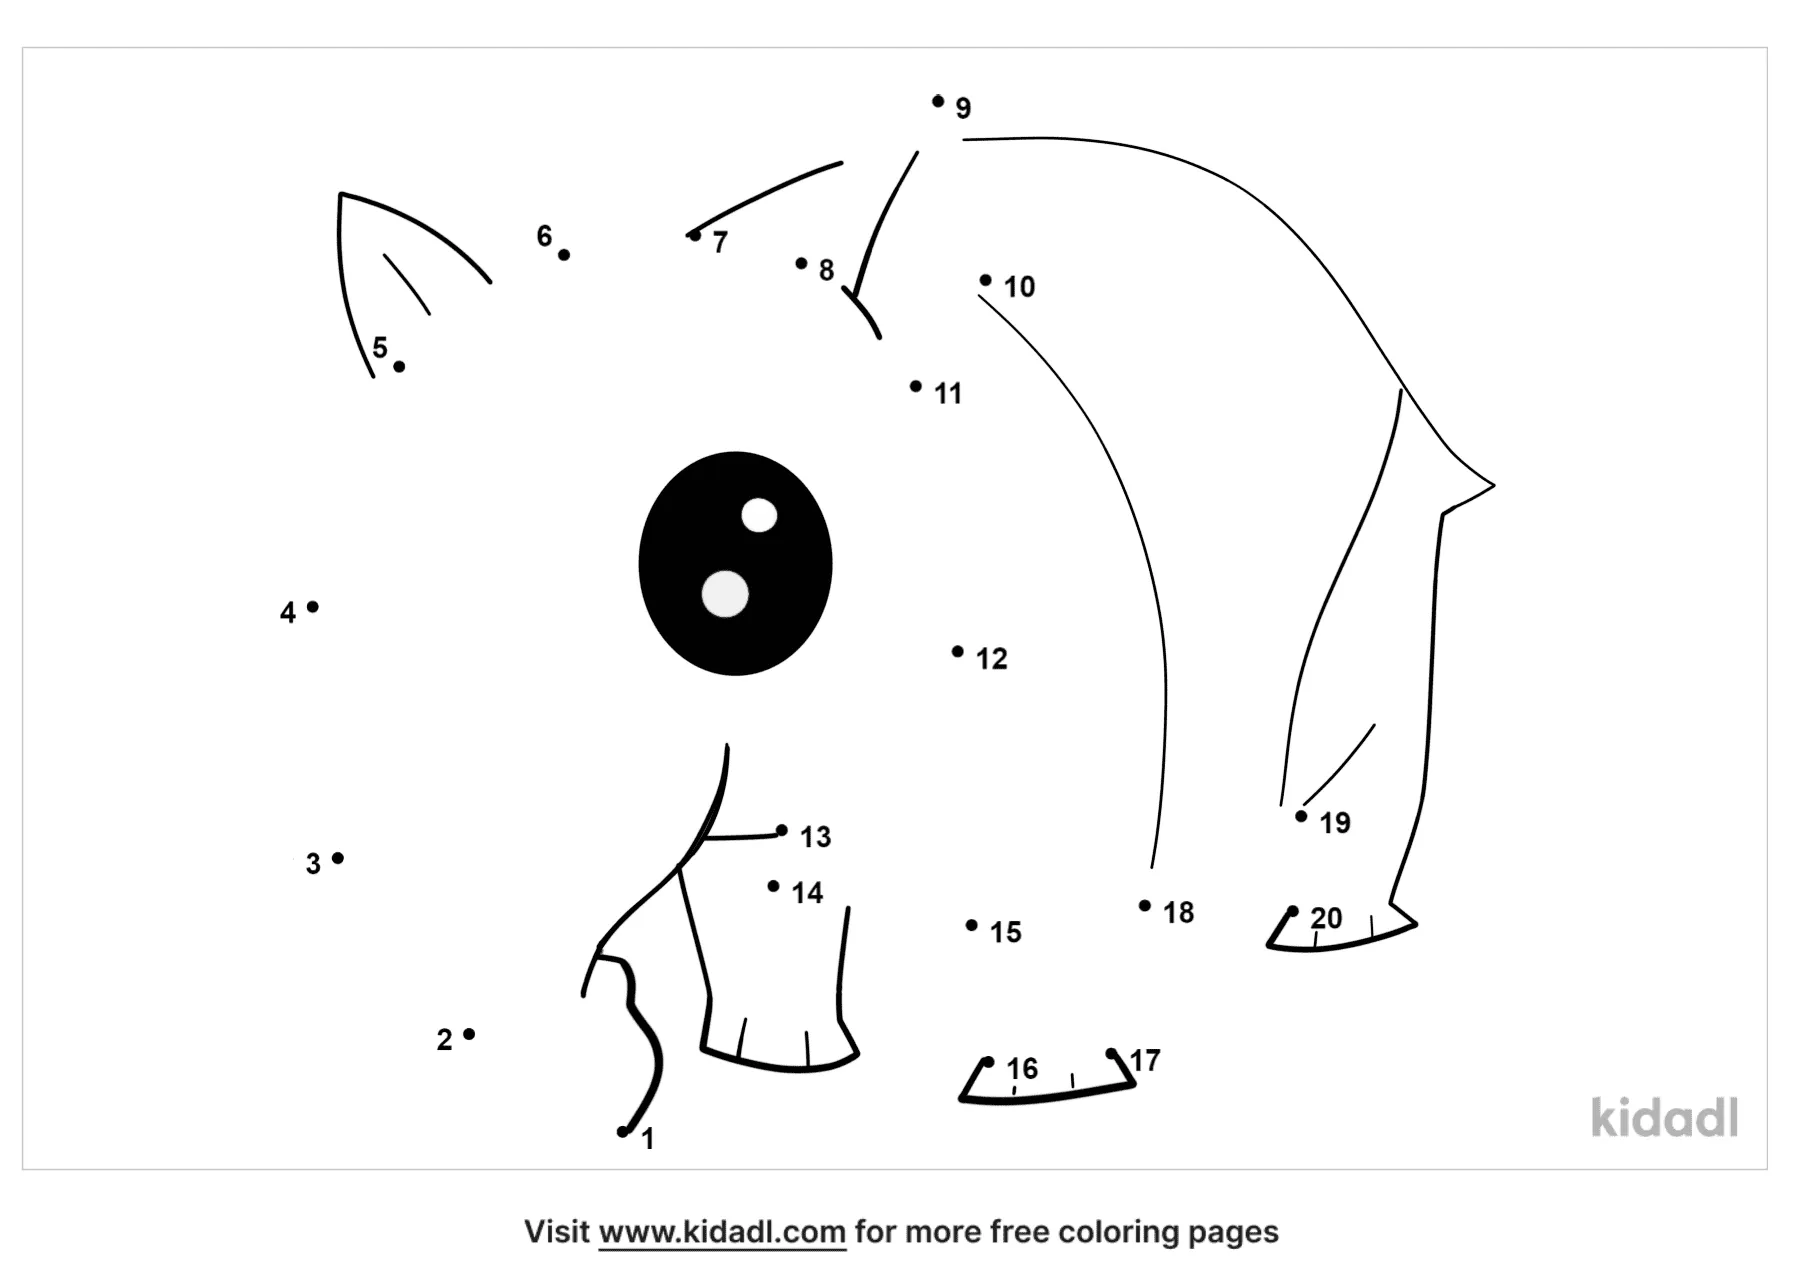 Free Animal Easy 1 Dot To Dot Printables For Kids Kidadl